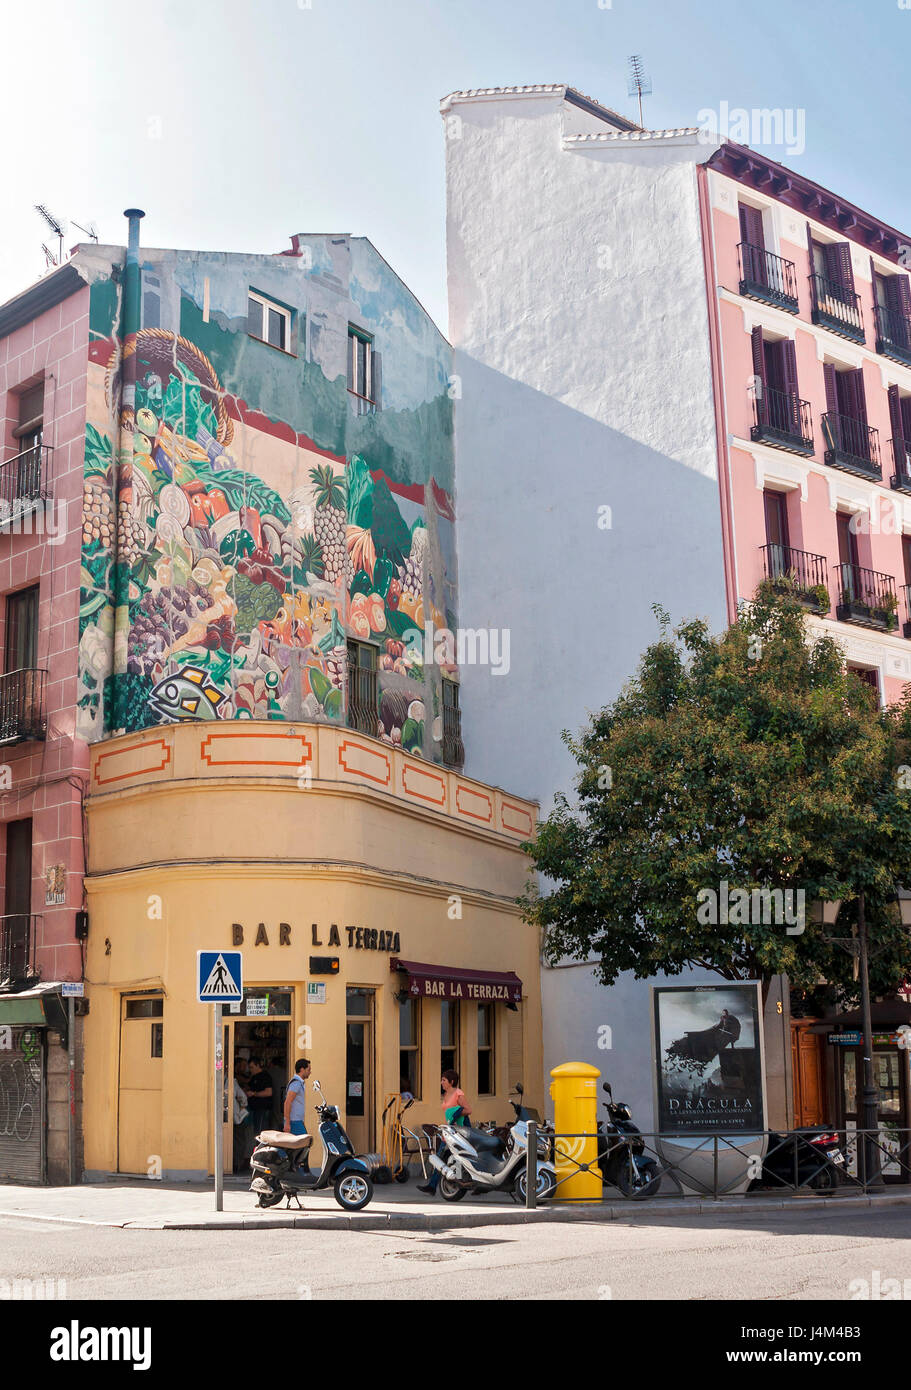 Fachada pintada en el barrio de La Latina, Madrid, España. Stock Photo